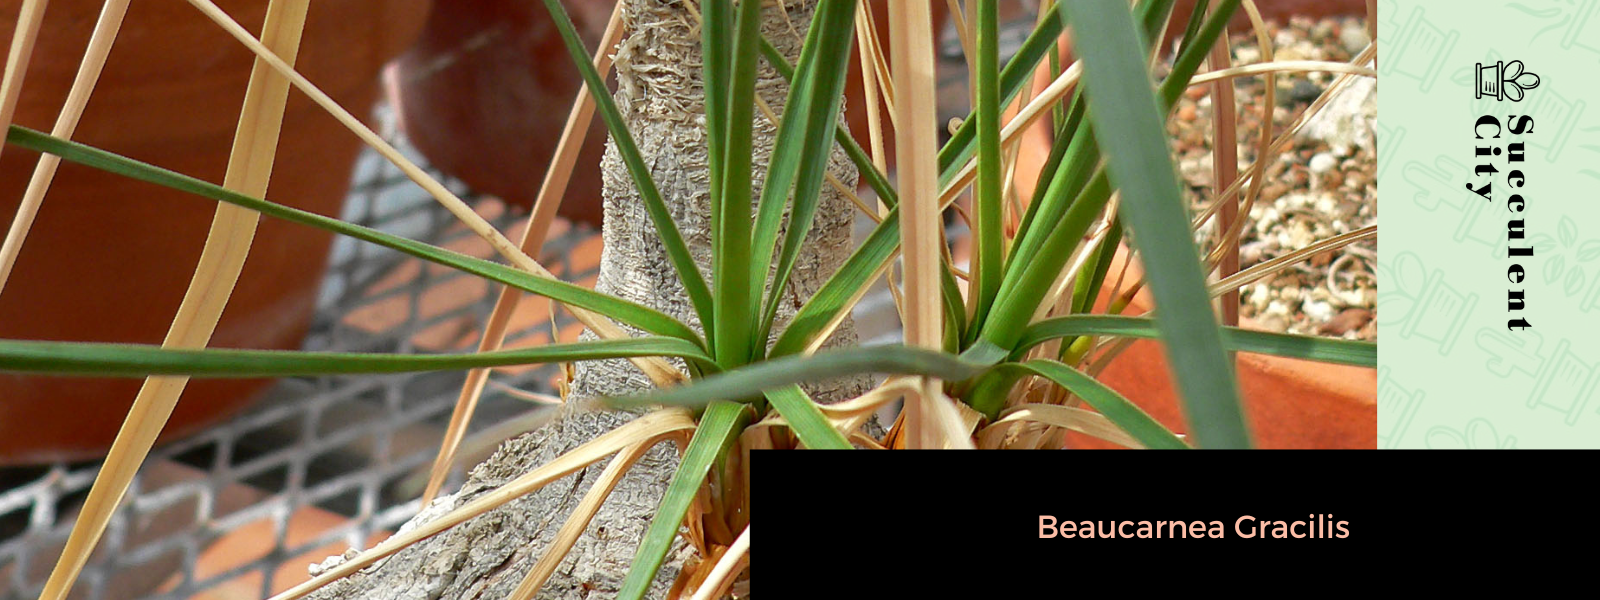 Beaucarnea gracilis